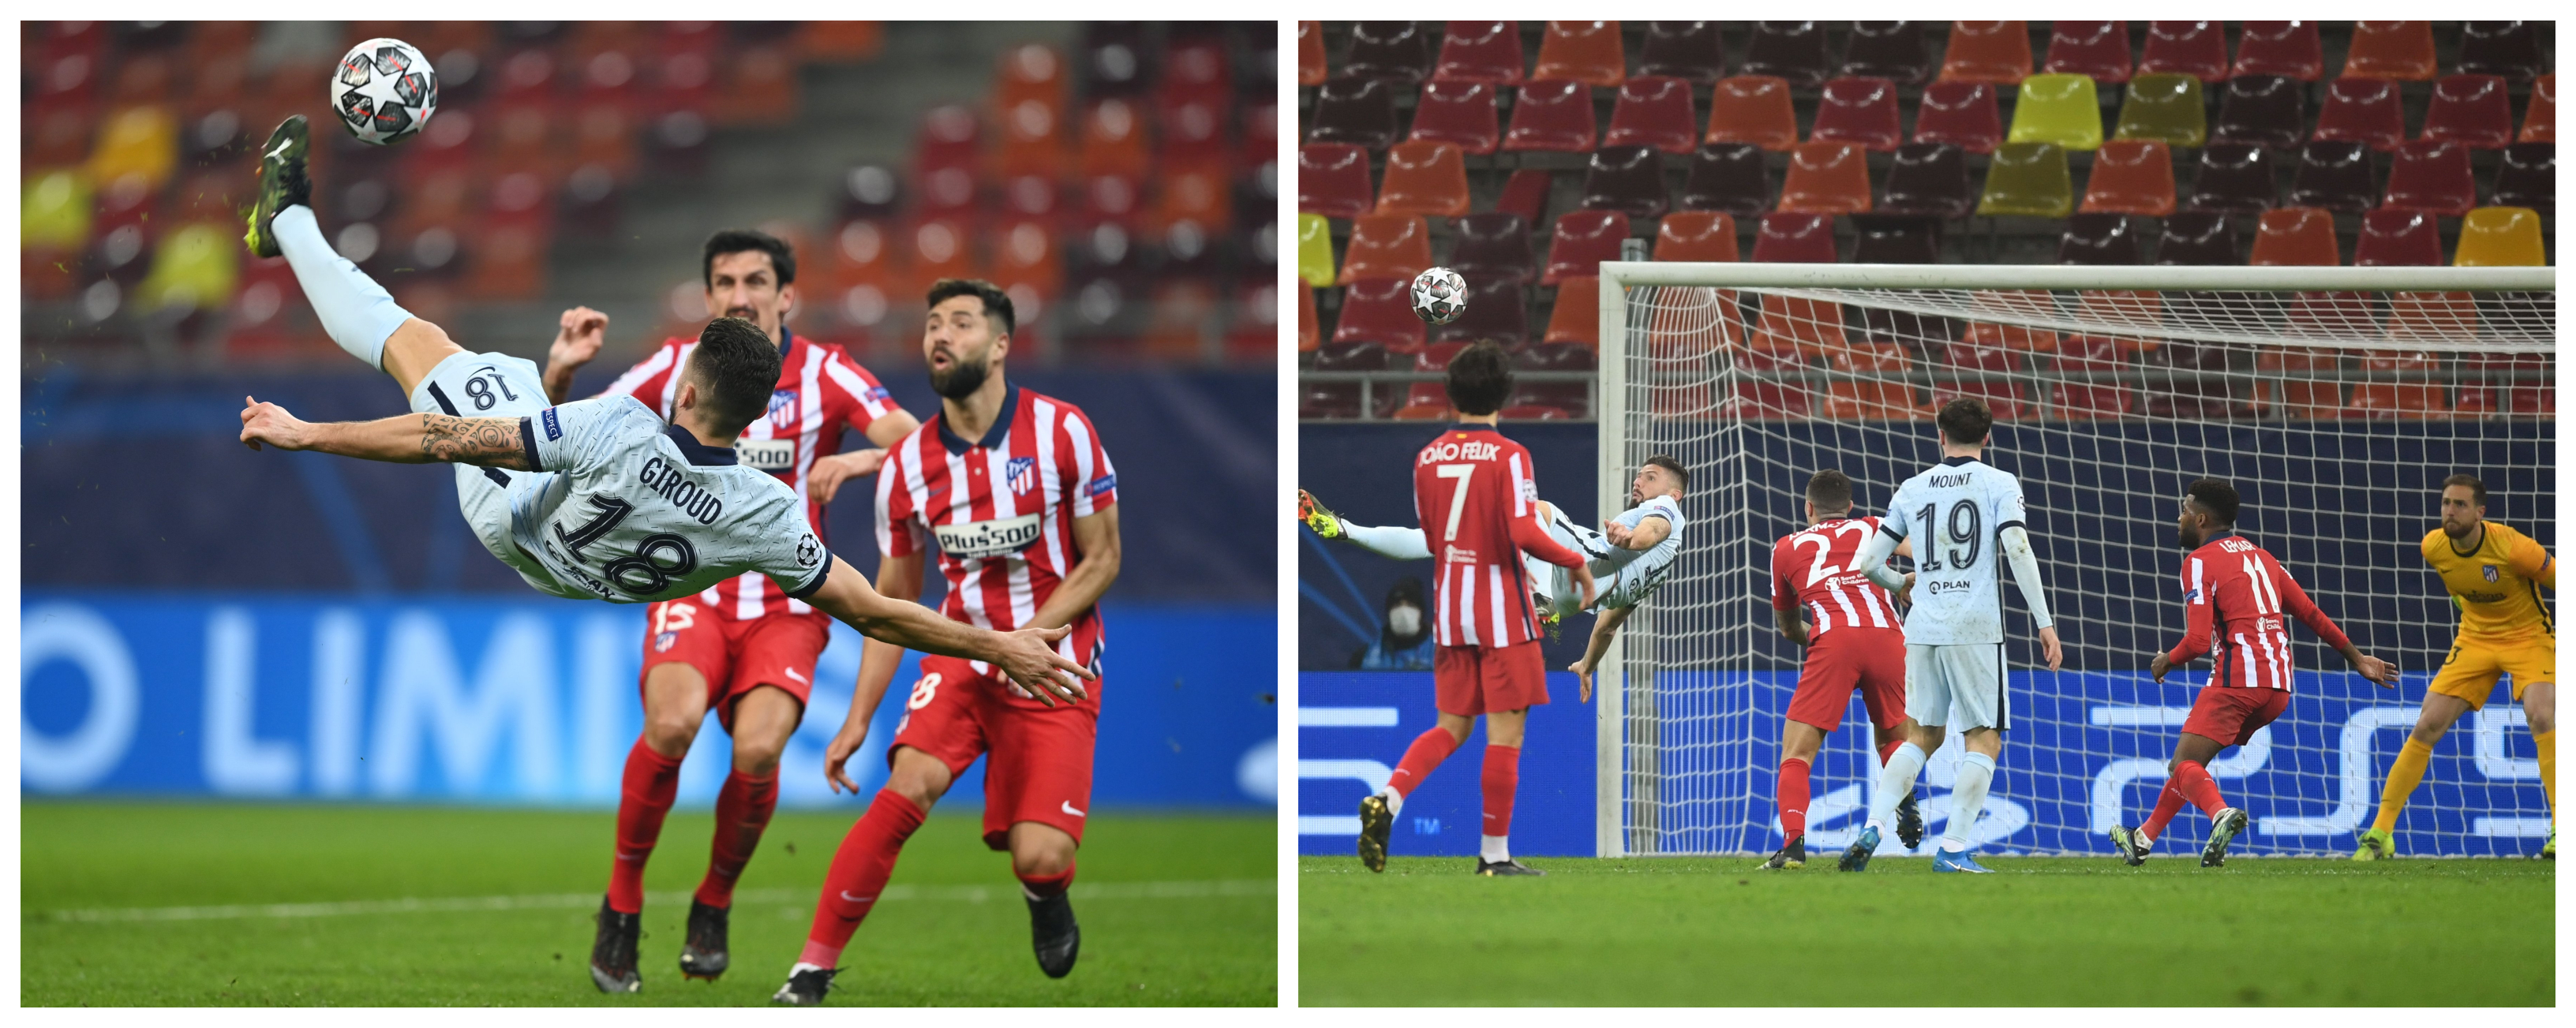 De chilena. Así marcó Olivier Giroud el único gol del partido. Foto Prensa Libre: @ChelseaFC_Sp